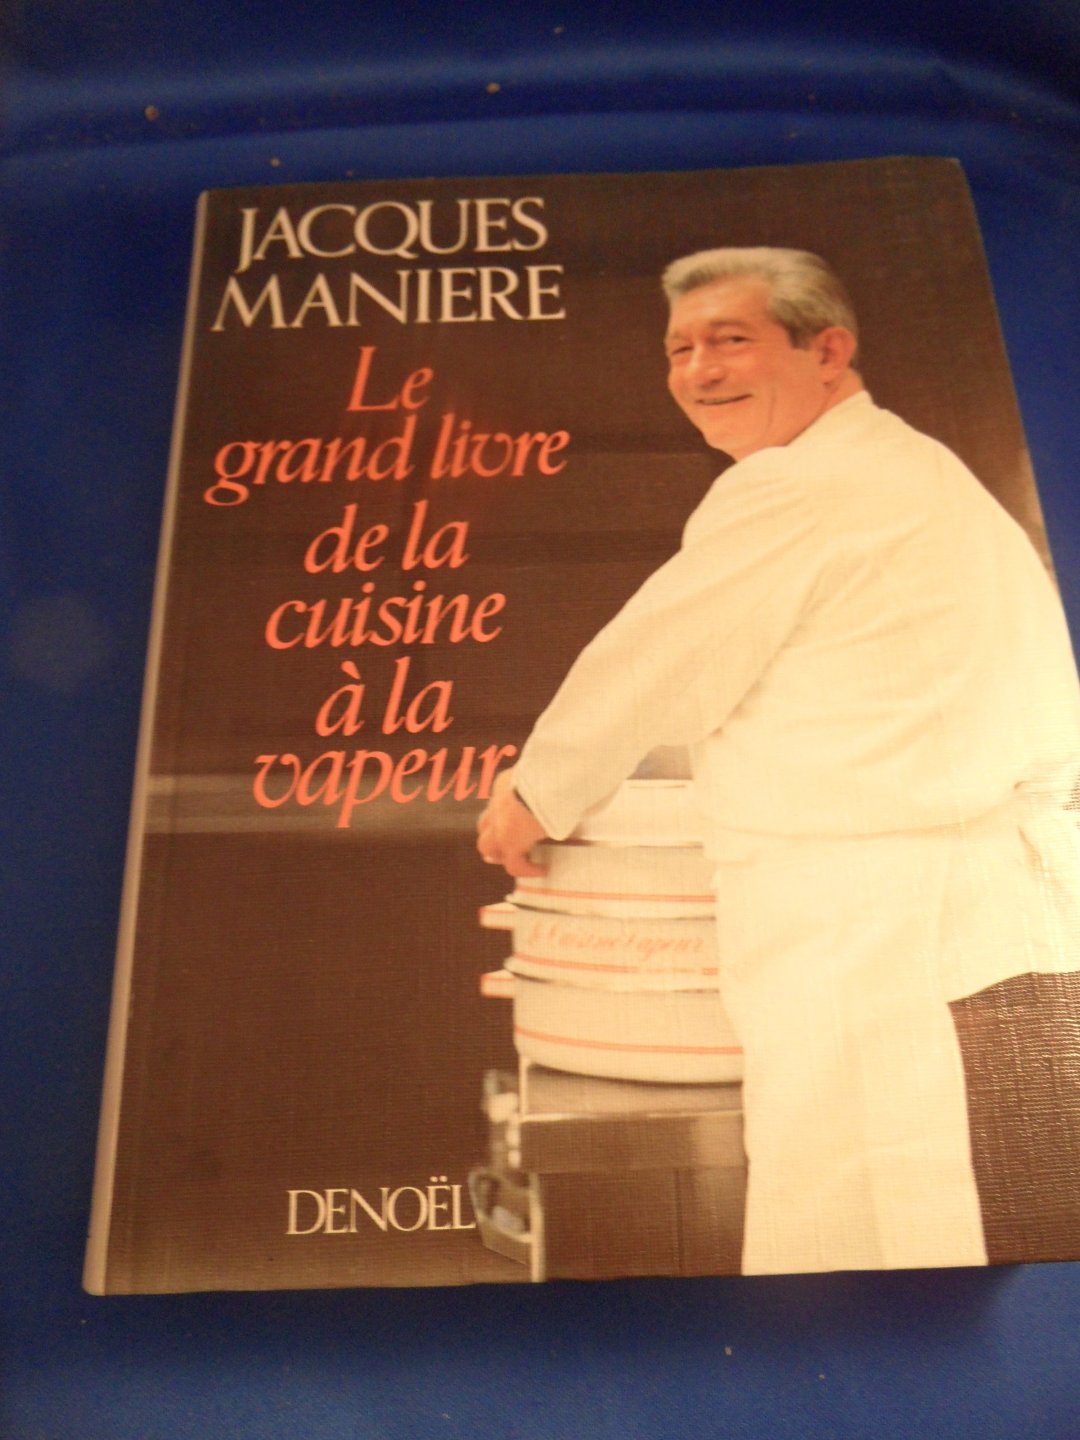 Maniere, Jacques - Le Grand livre de la cuisine à la vapeur